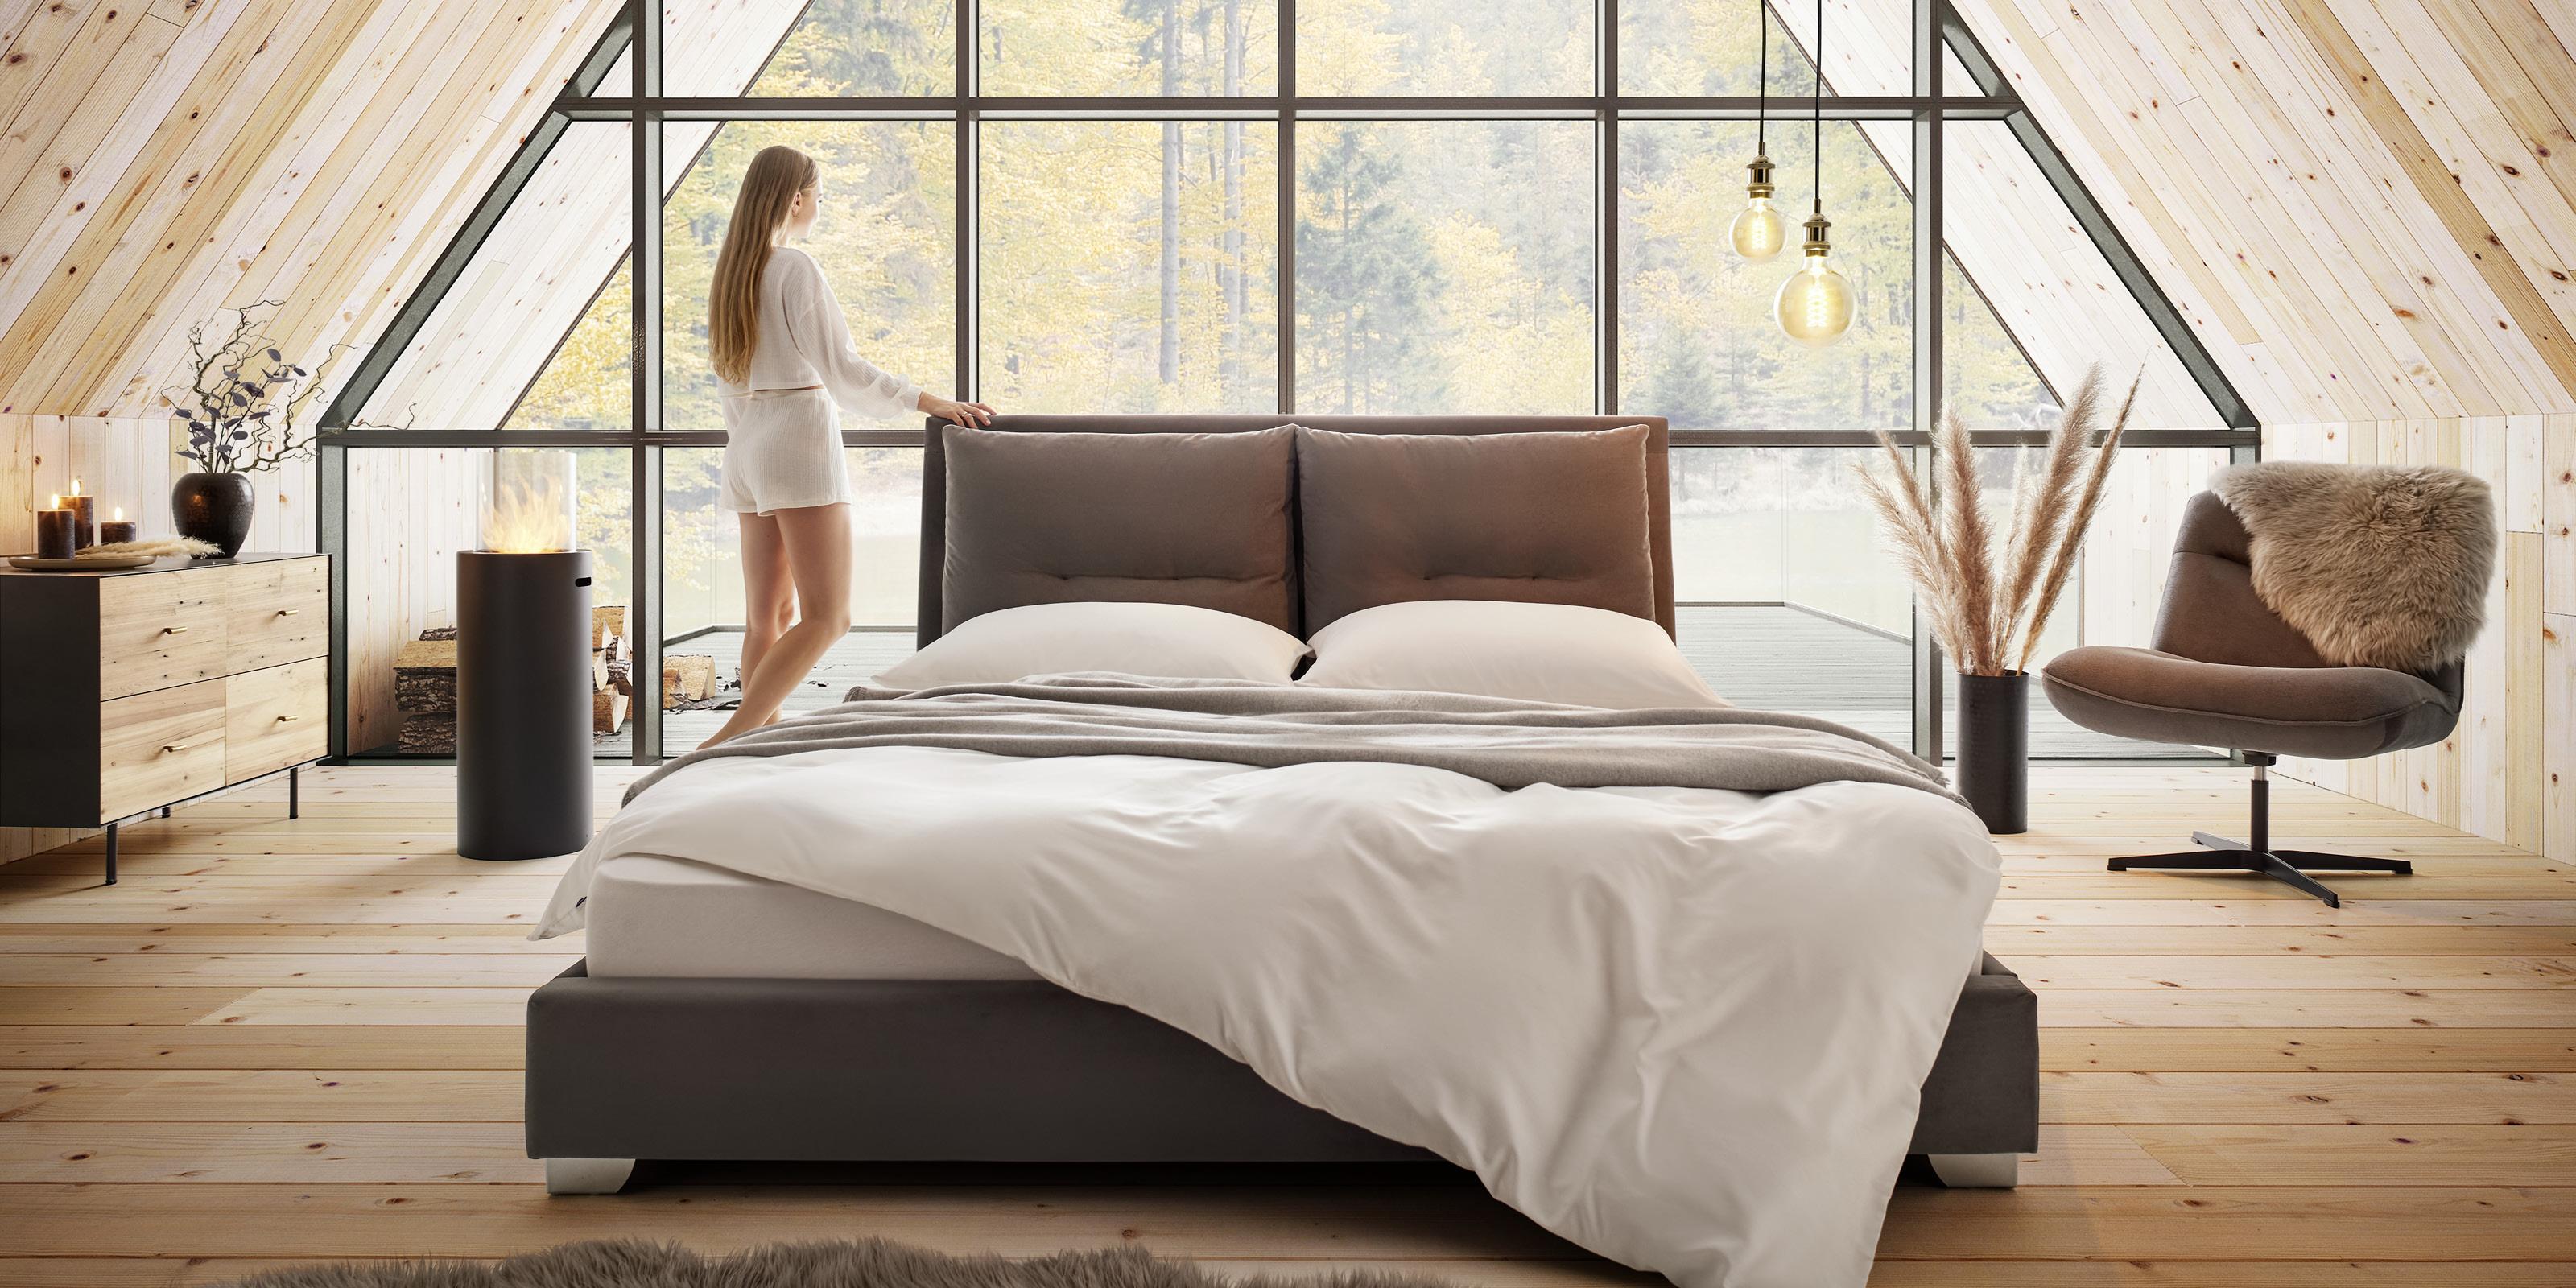 luxusní nízká postel v ložnici obložené dřevem s prosklenou stěnou